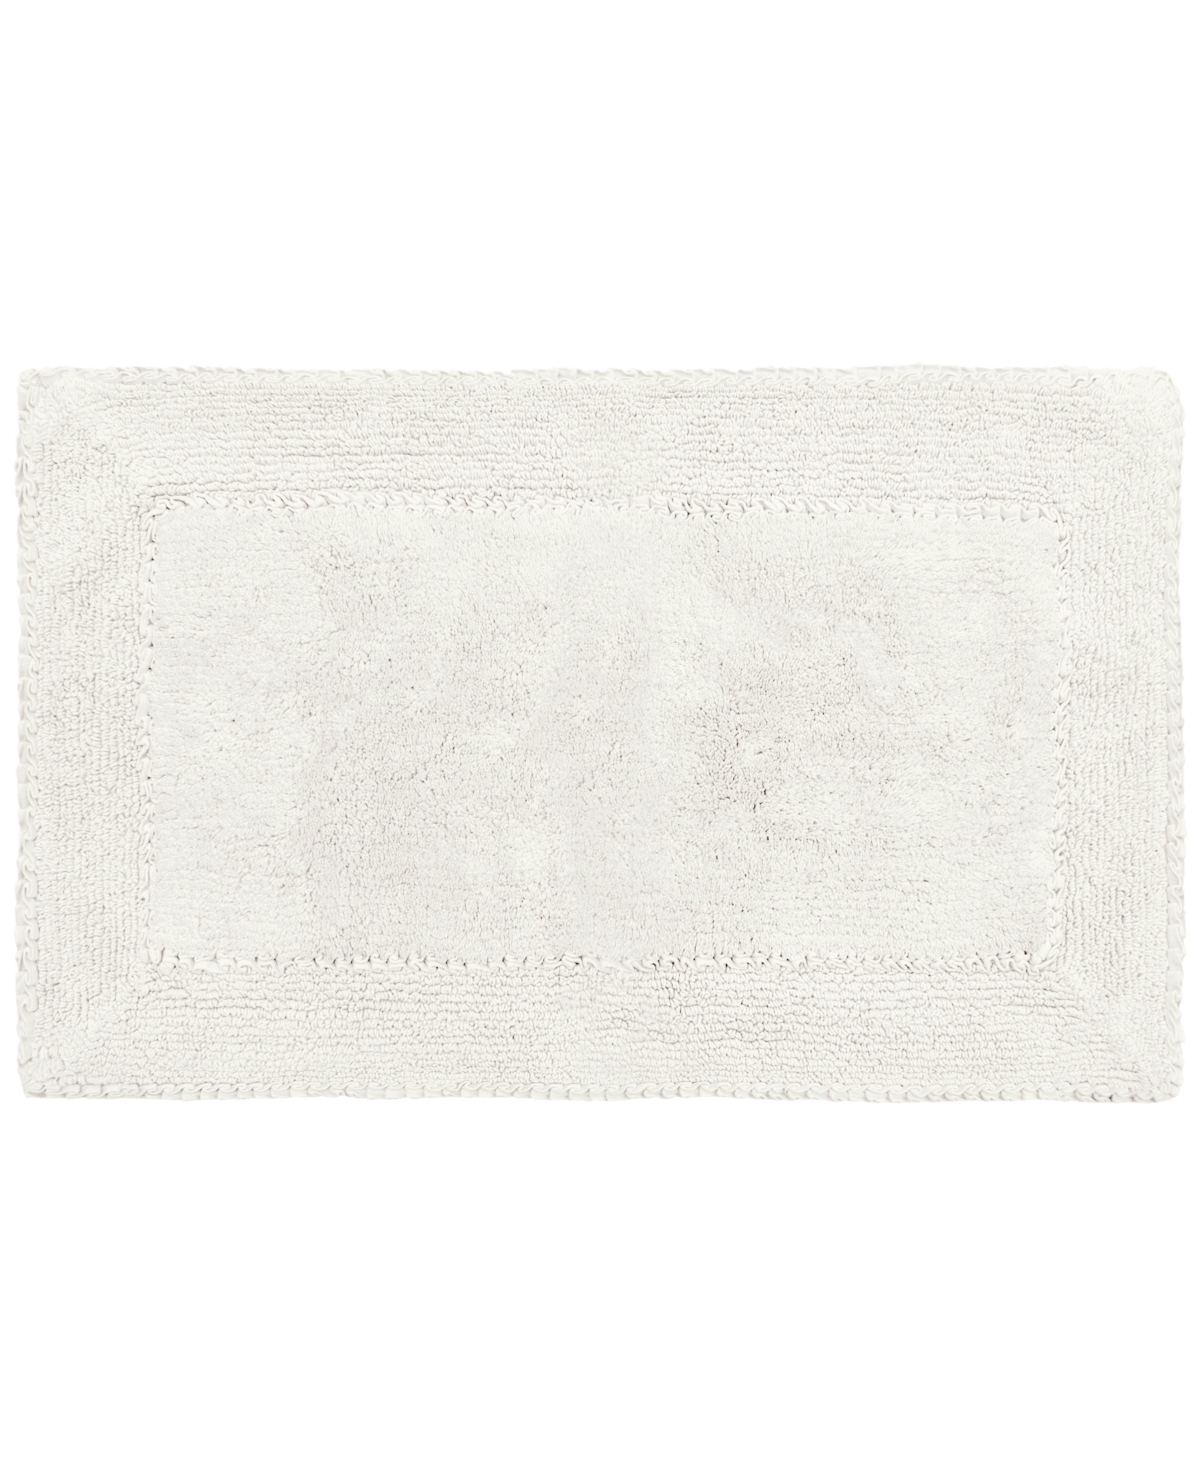 Laura Ashley Ruffled Cotton Bath Rug, 20" X 34" In White